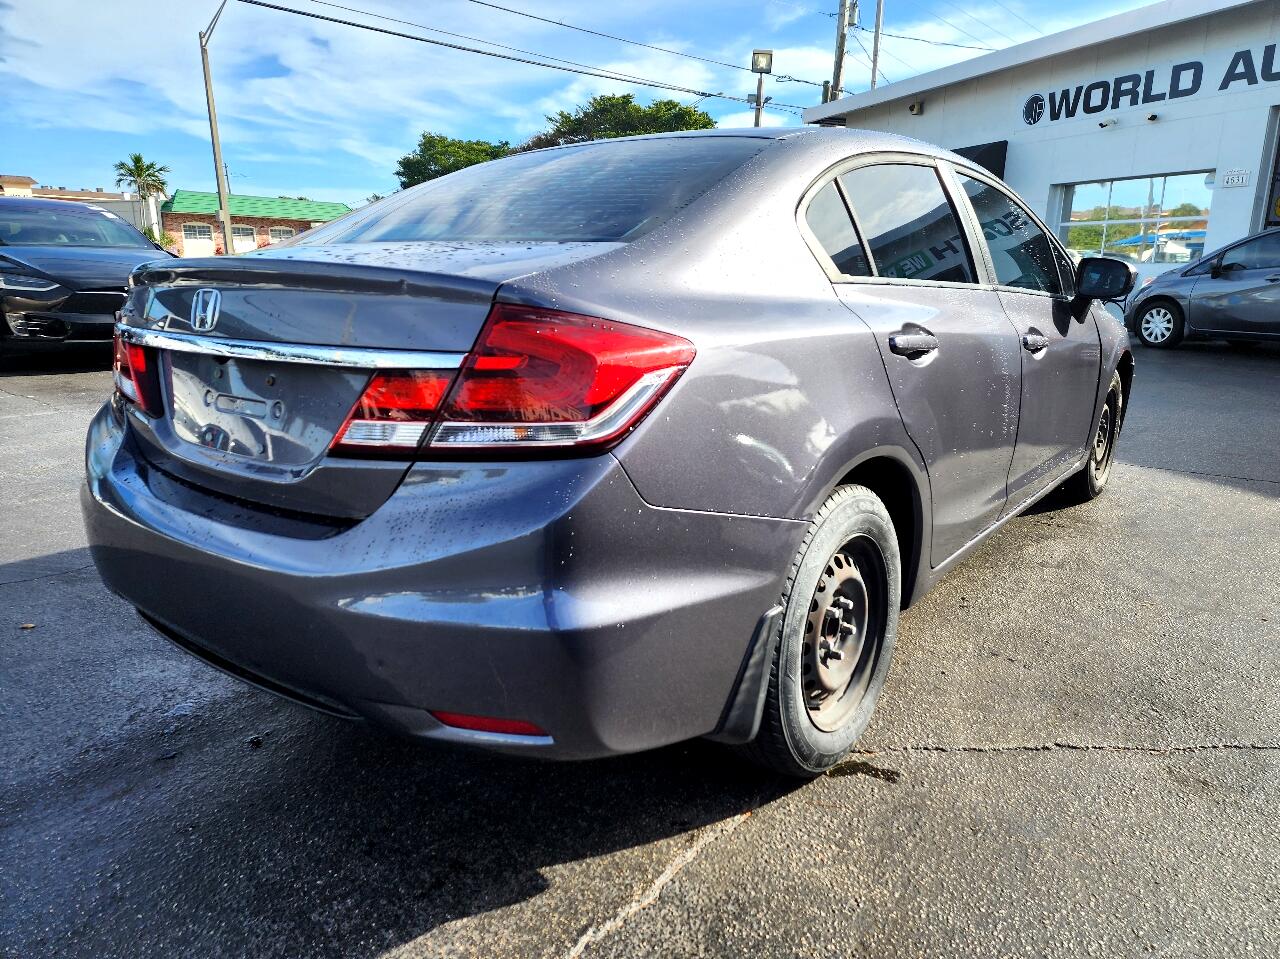 2014 HONDA Civic Sedan - $13,999